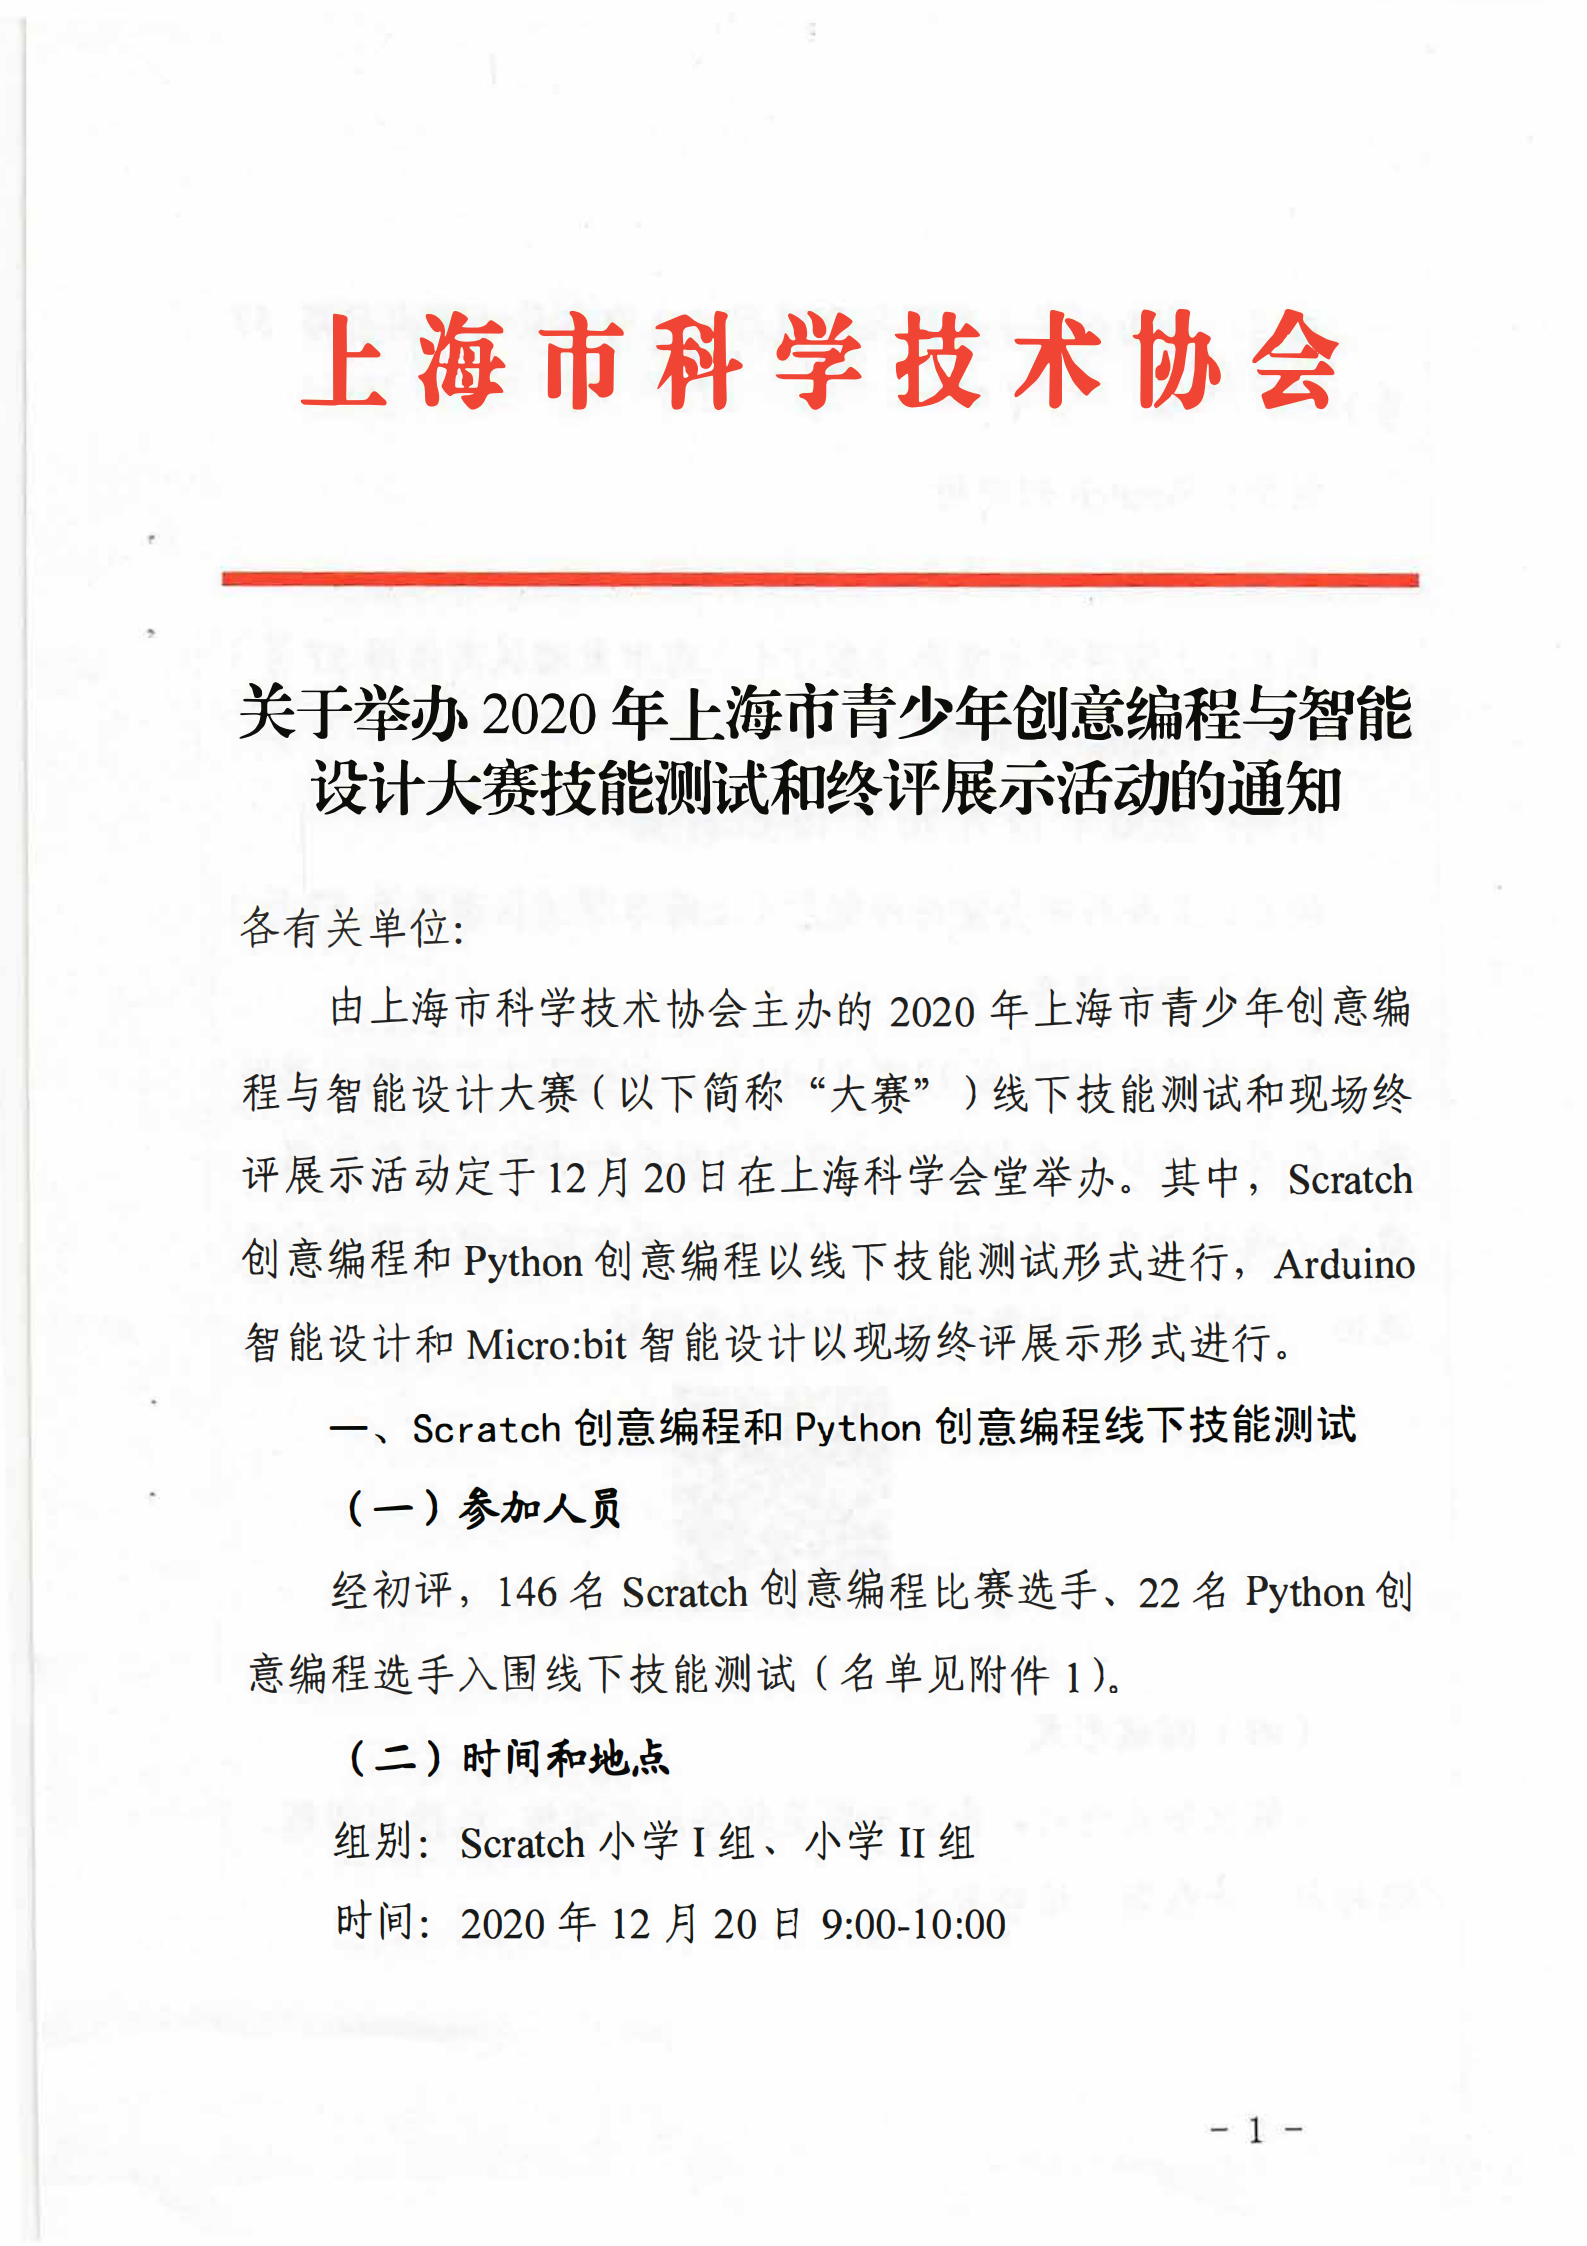 (扫描红头)关于举办2020年上海市青少年创意编程与智能设计大赛技能测试和终评展示活动的通知(1)_00.png